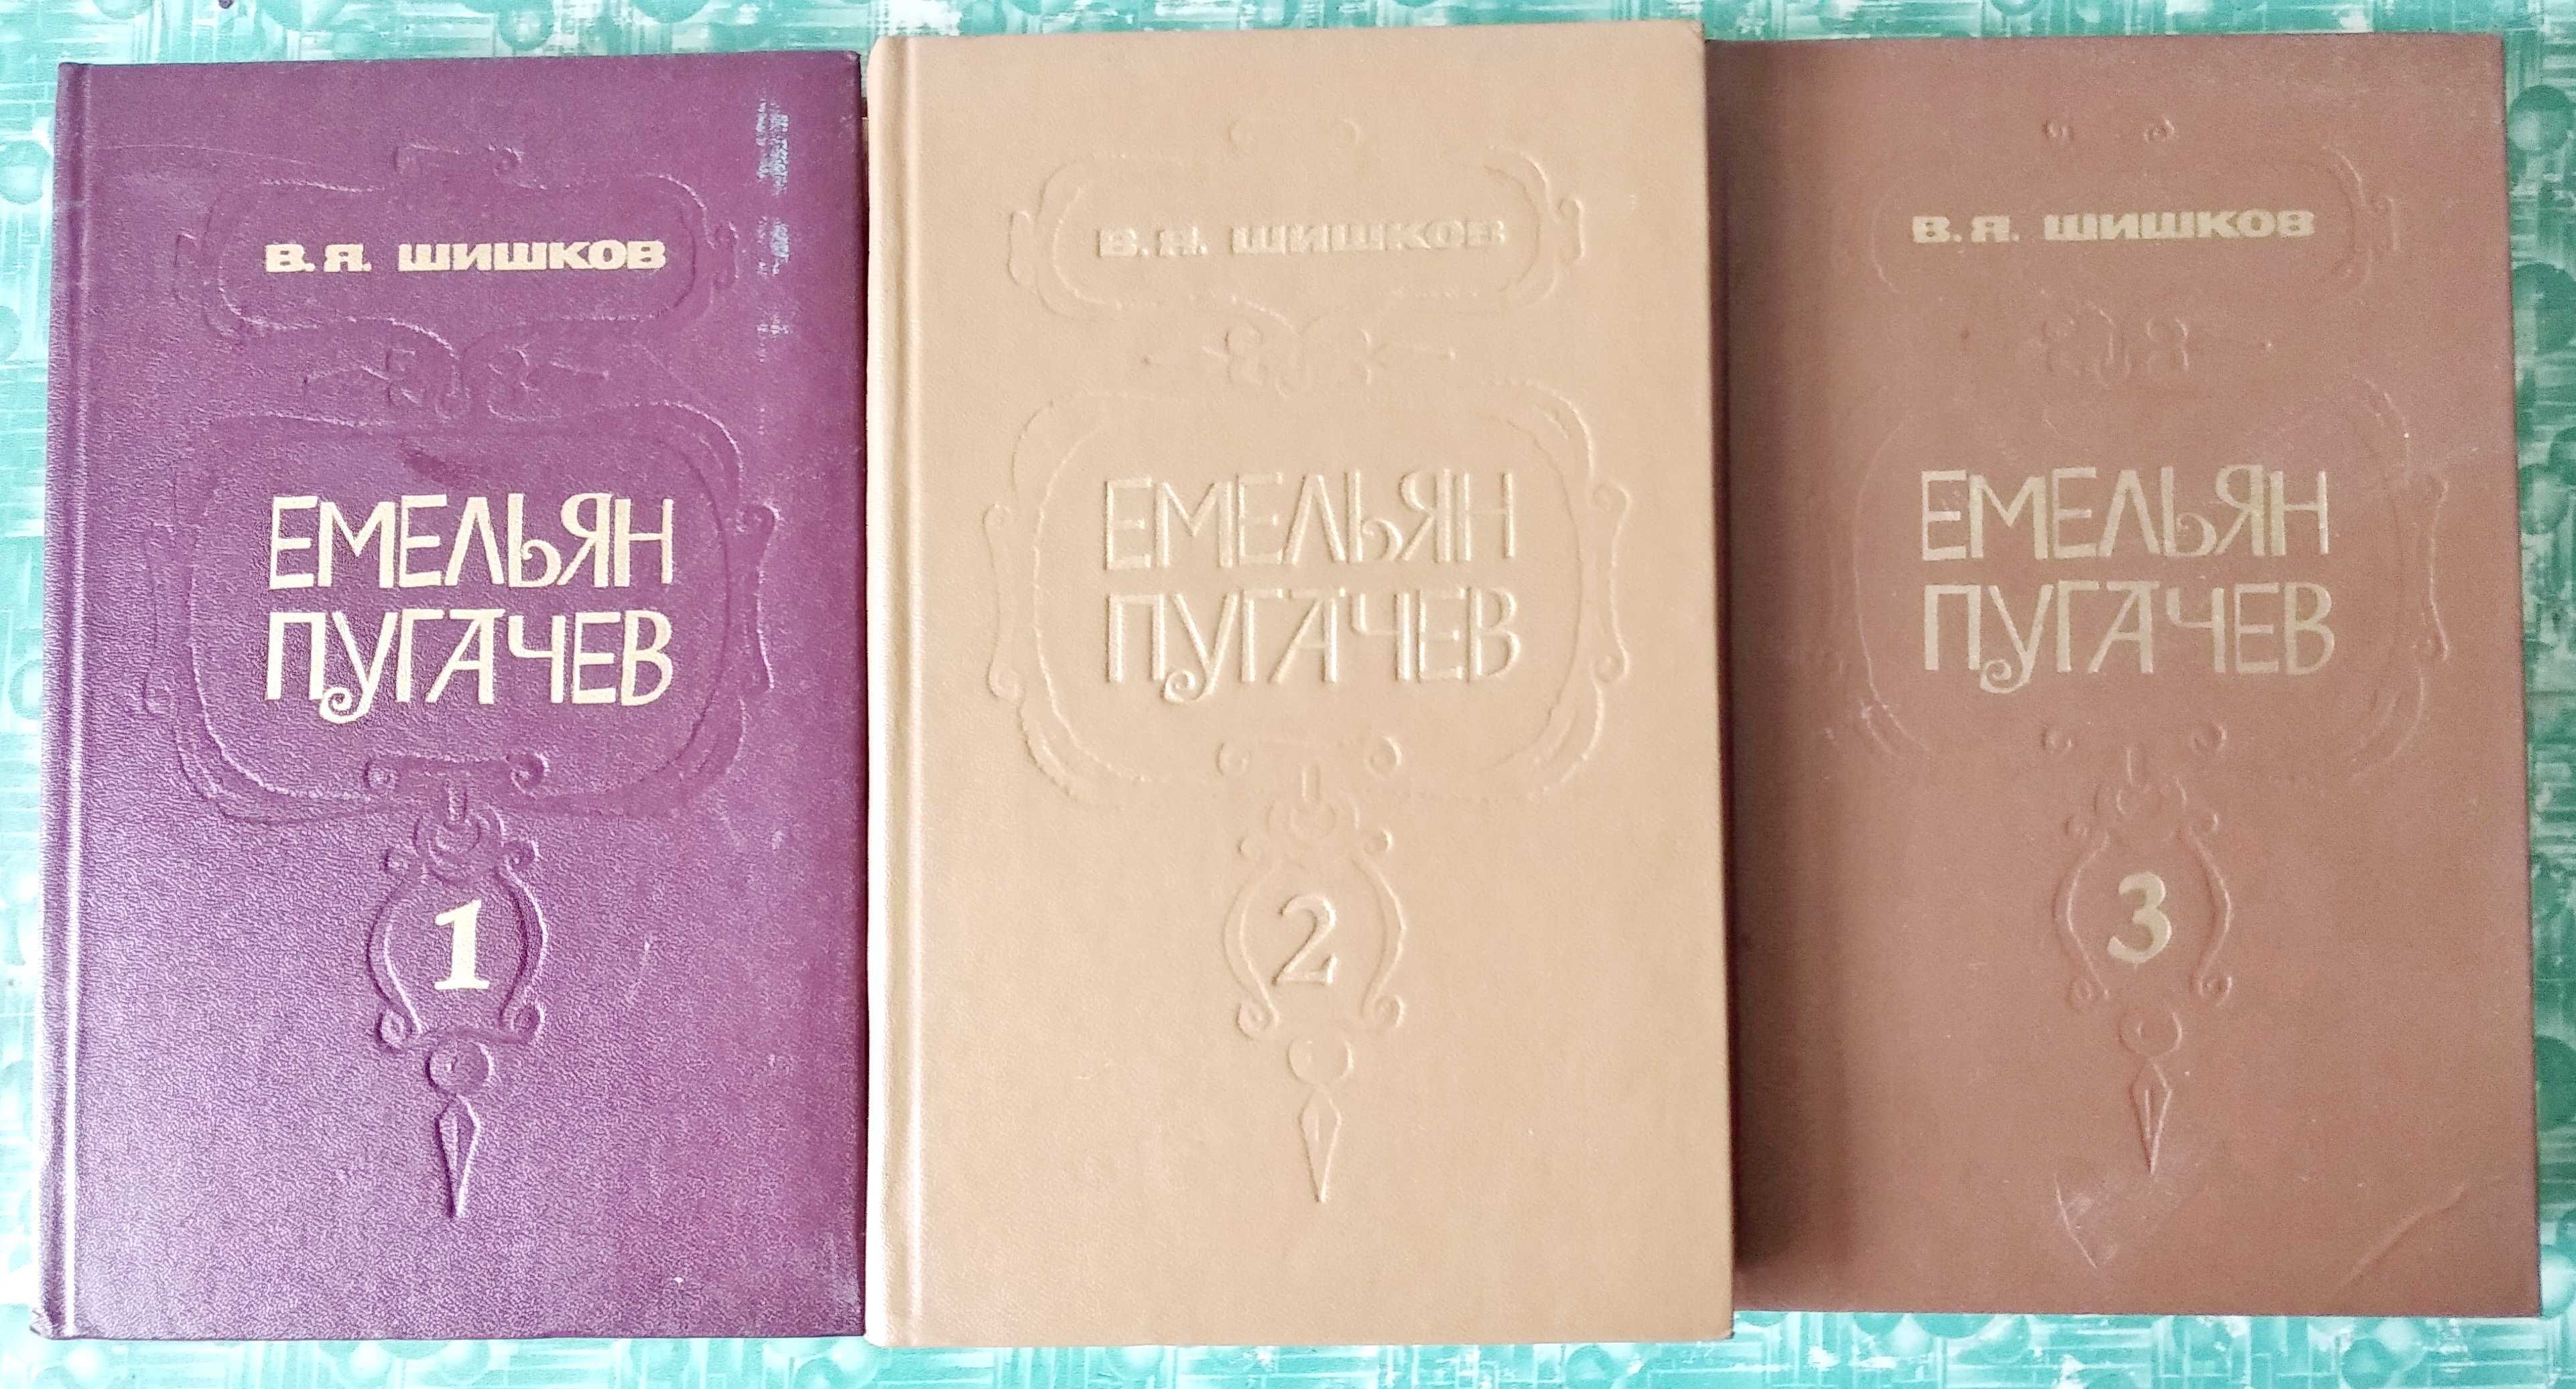 Шишков В.Я. "Емельян Пугачев" (комплект из 3 книг)